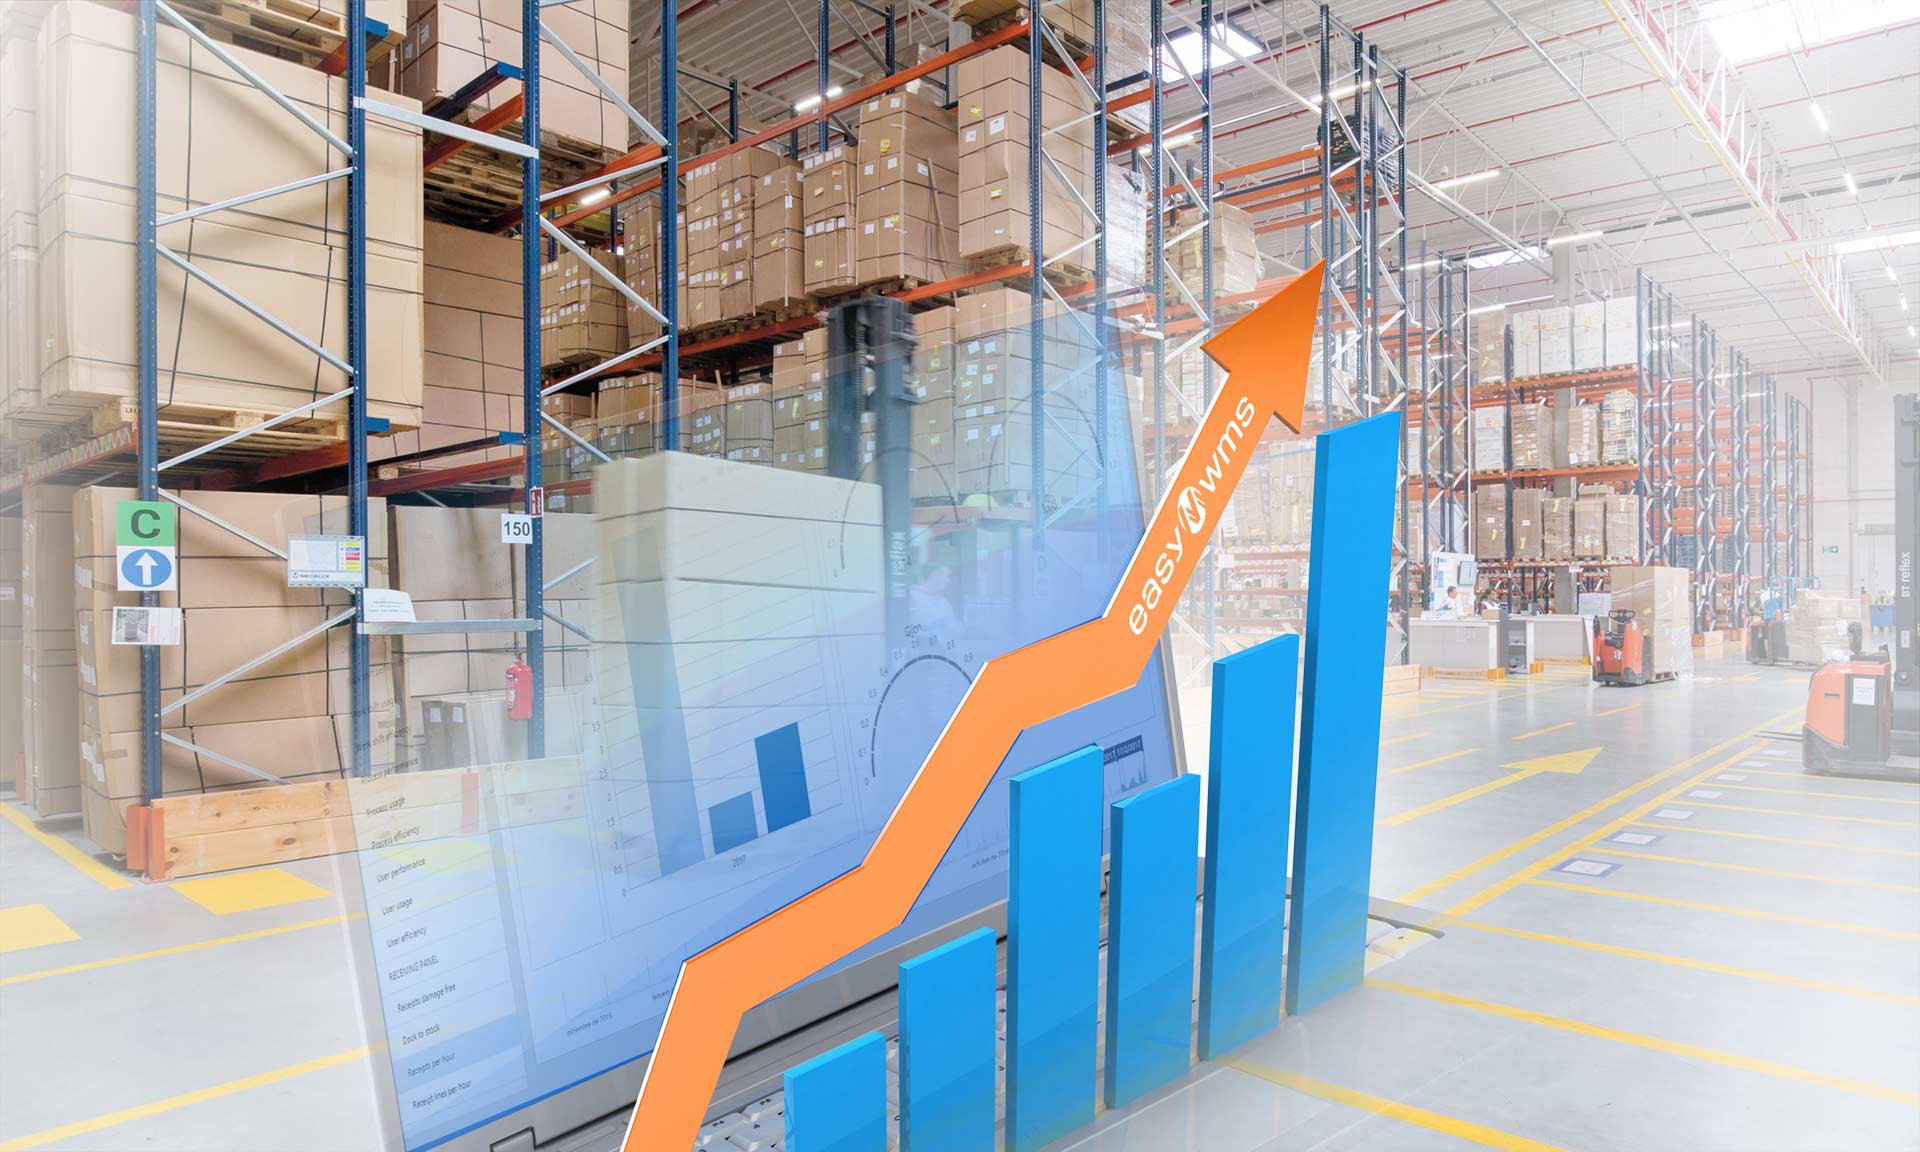 Logistics management omvat het beheren van goederenstromen en producten in het magazijn